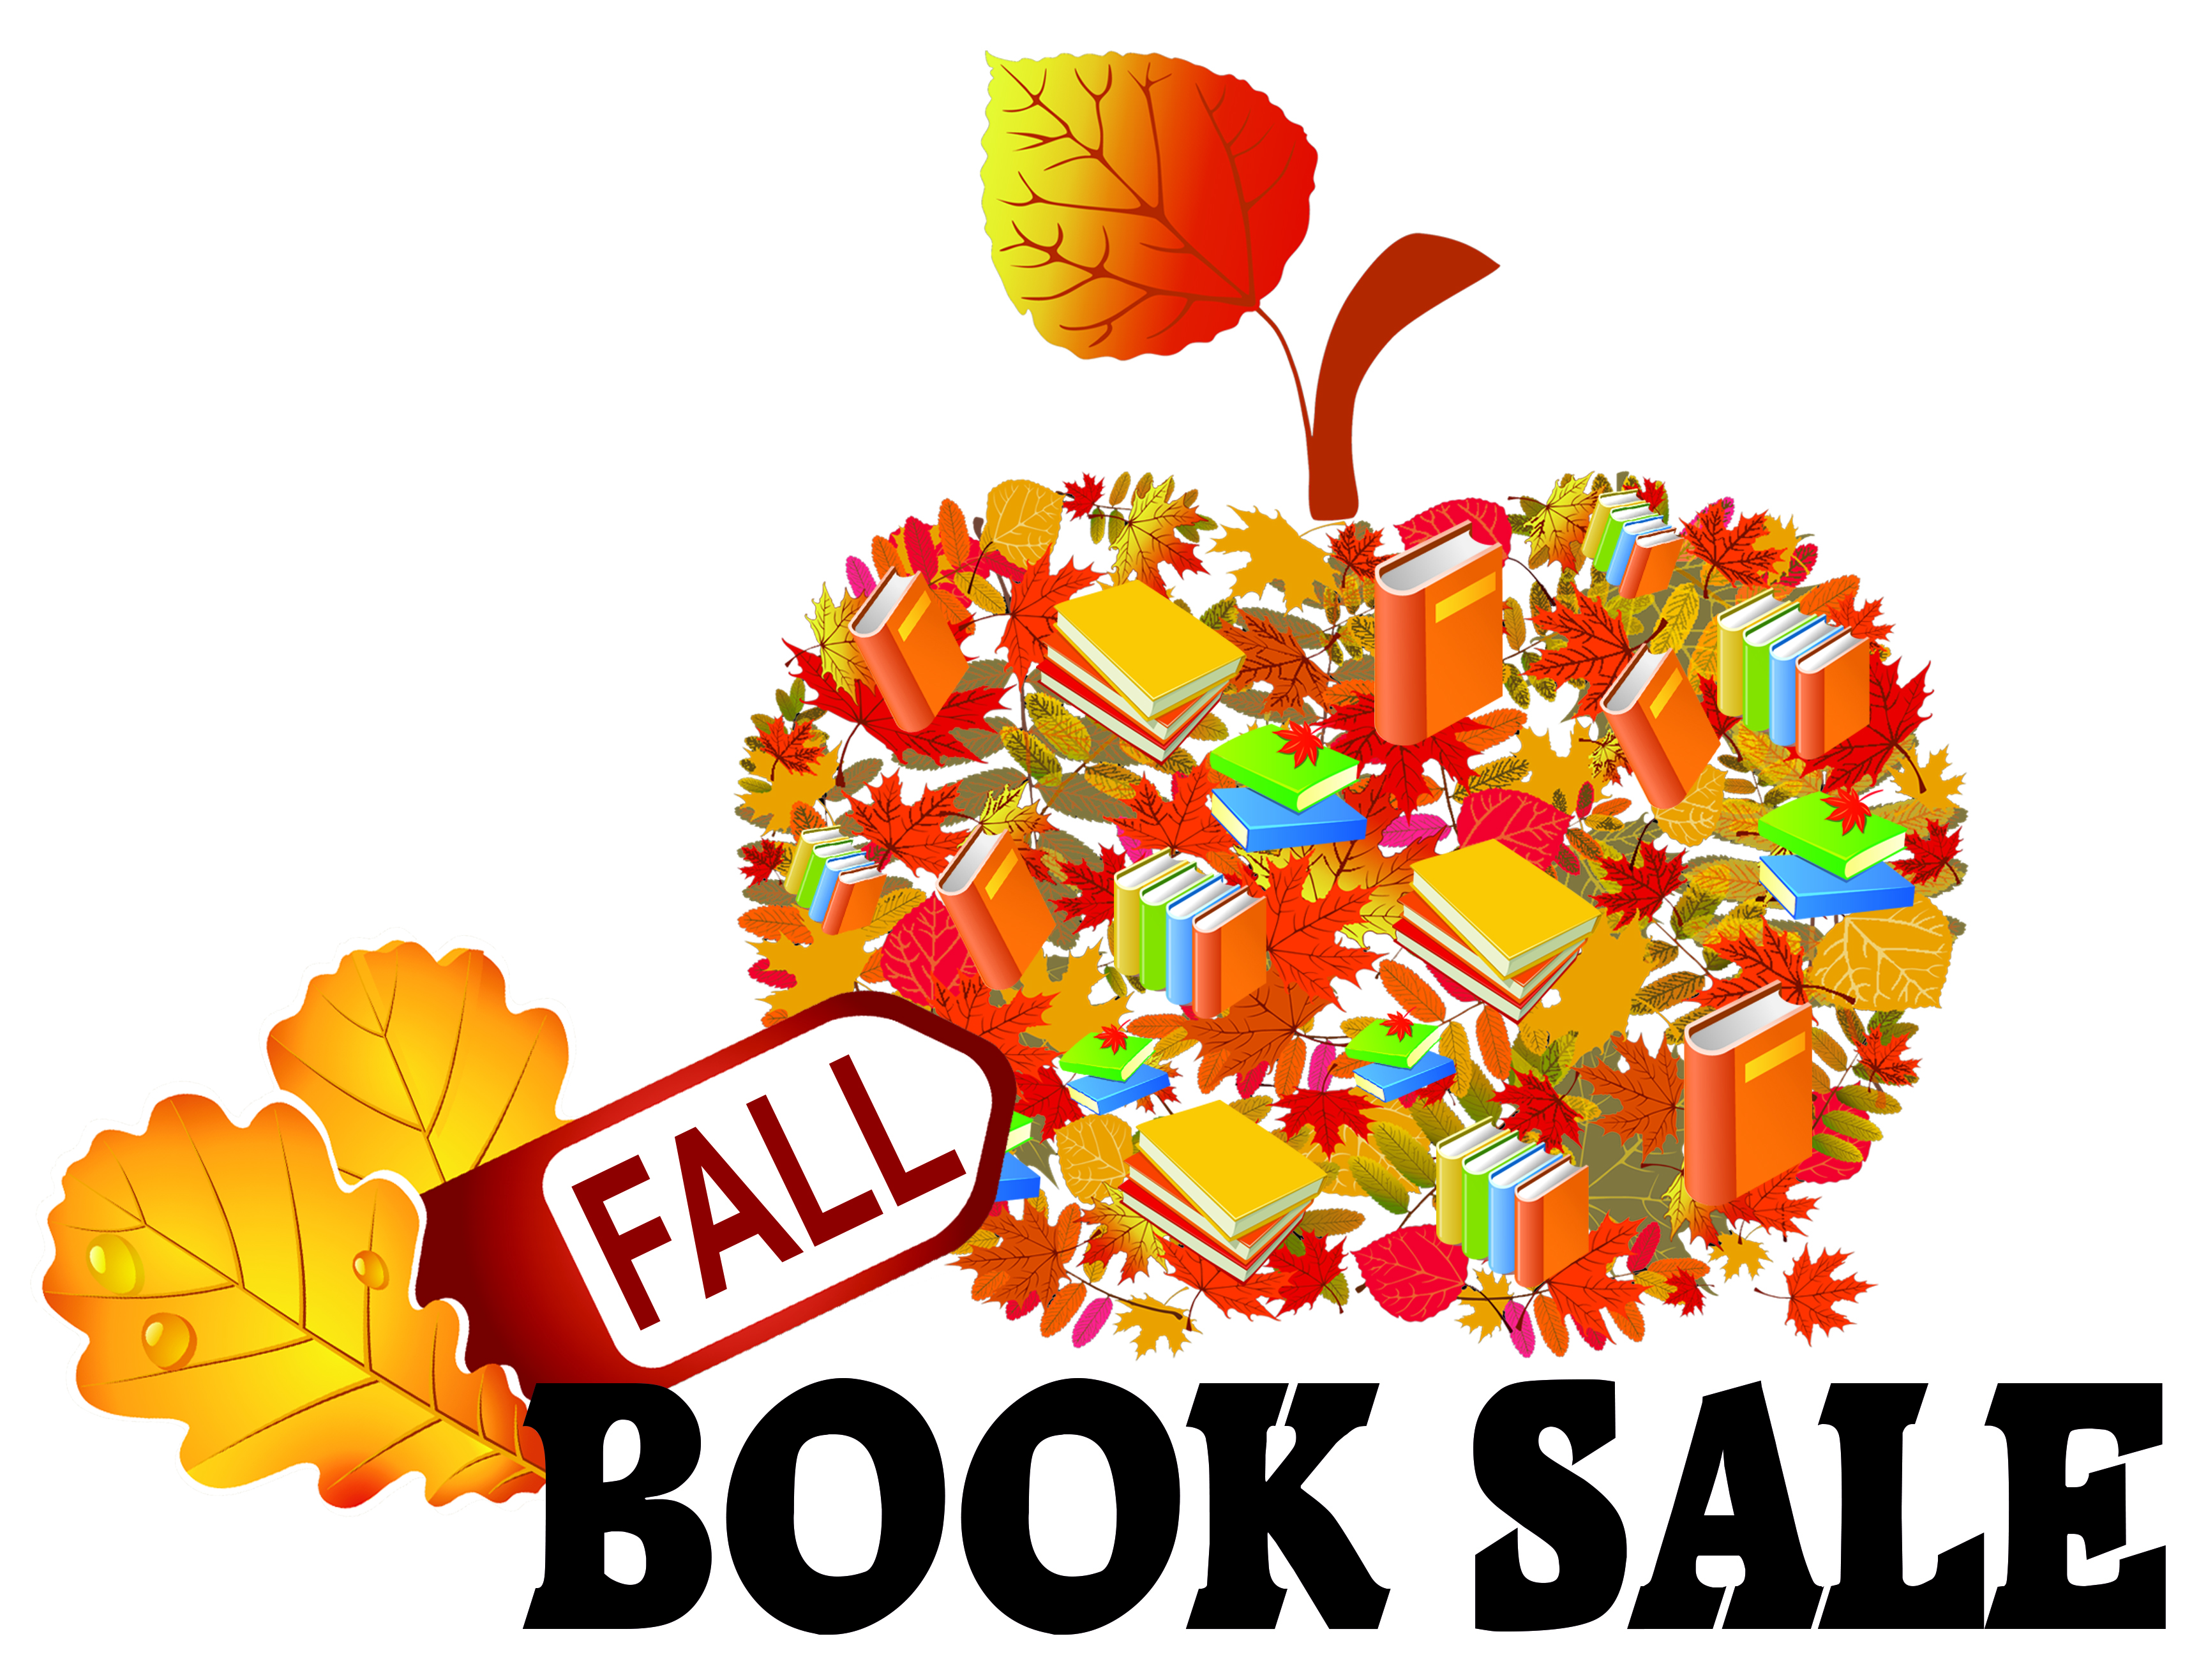 Fall Book Sale Scenicregional